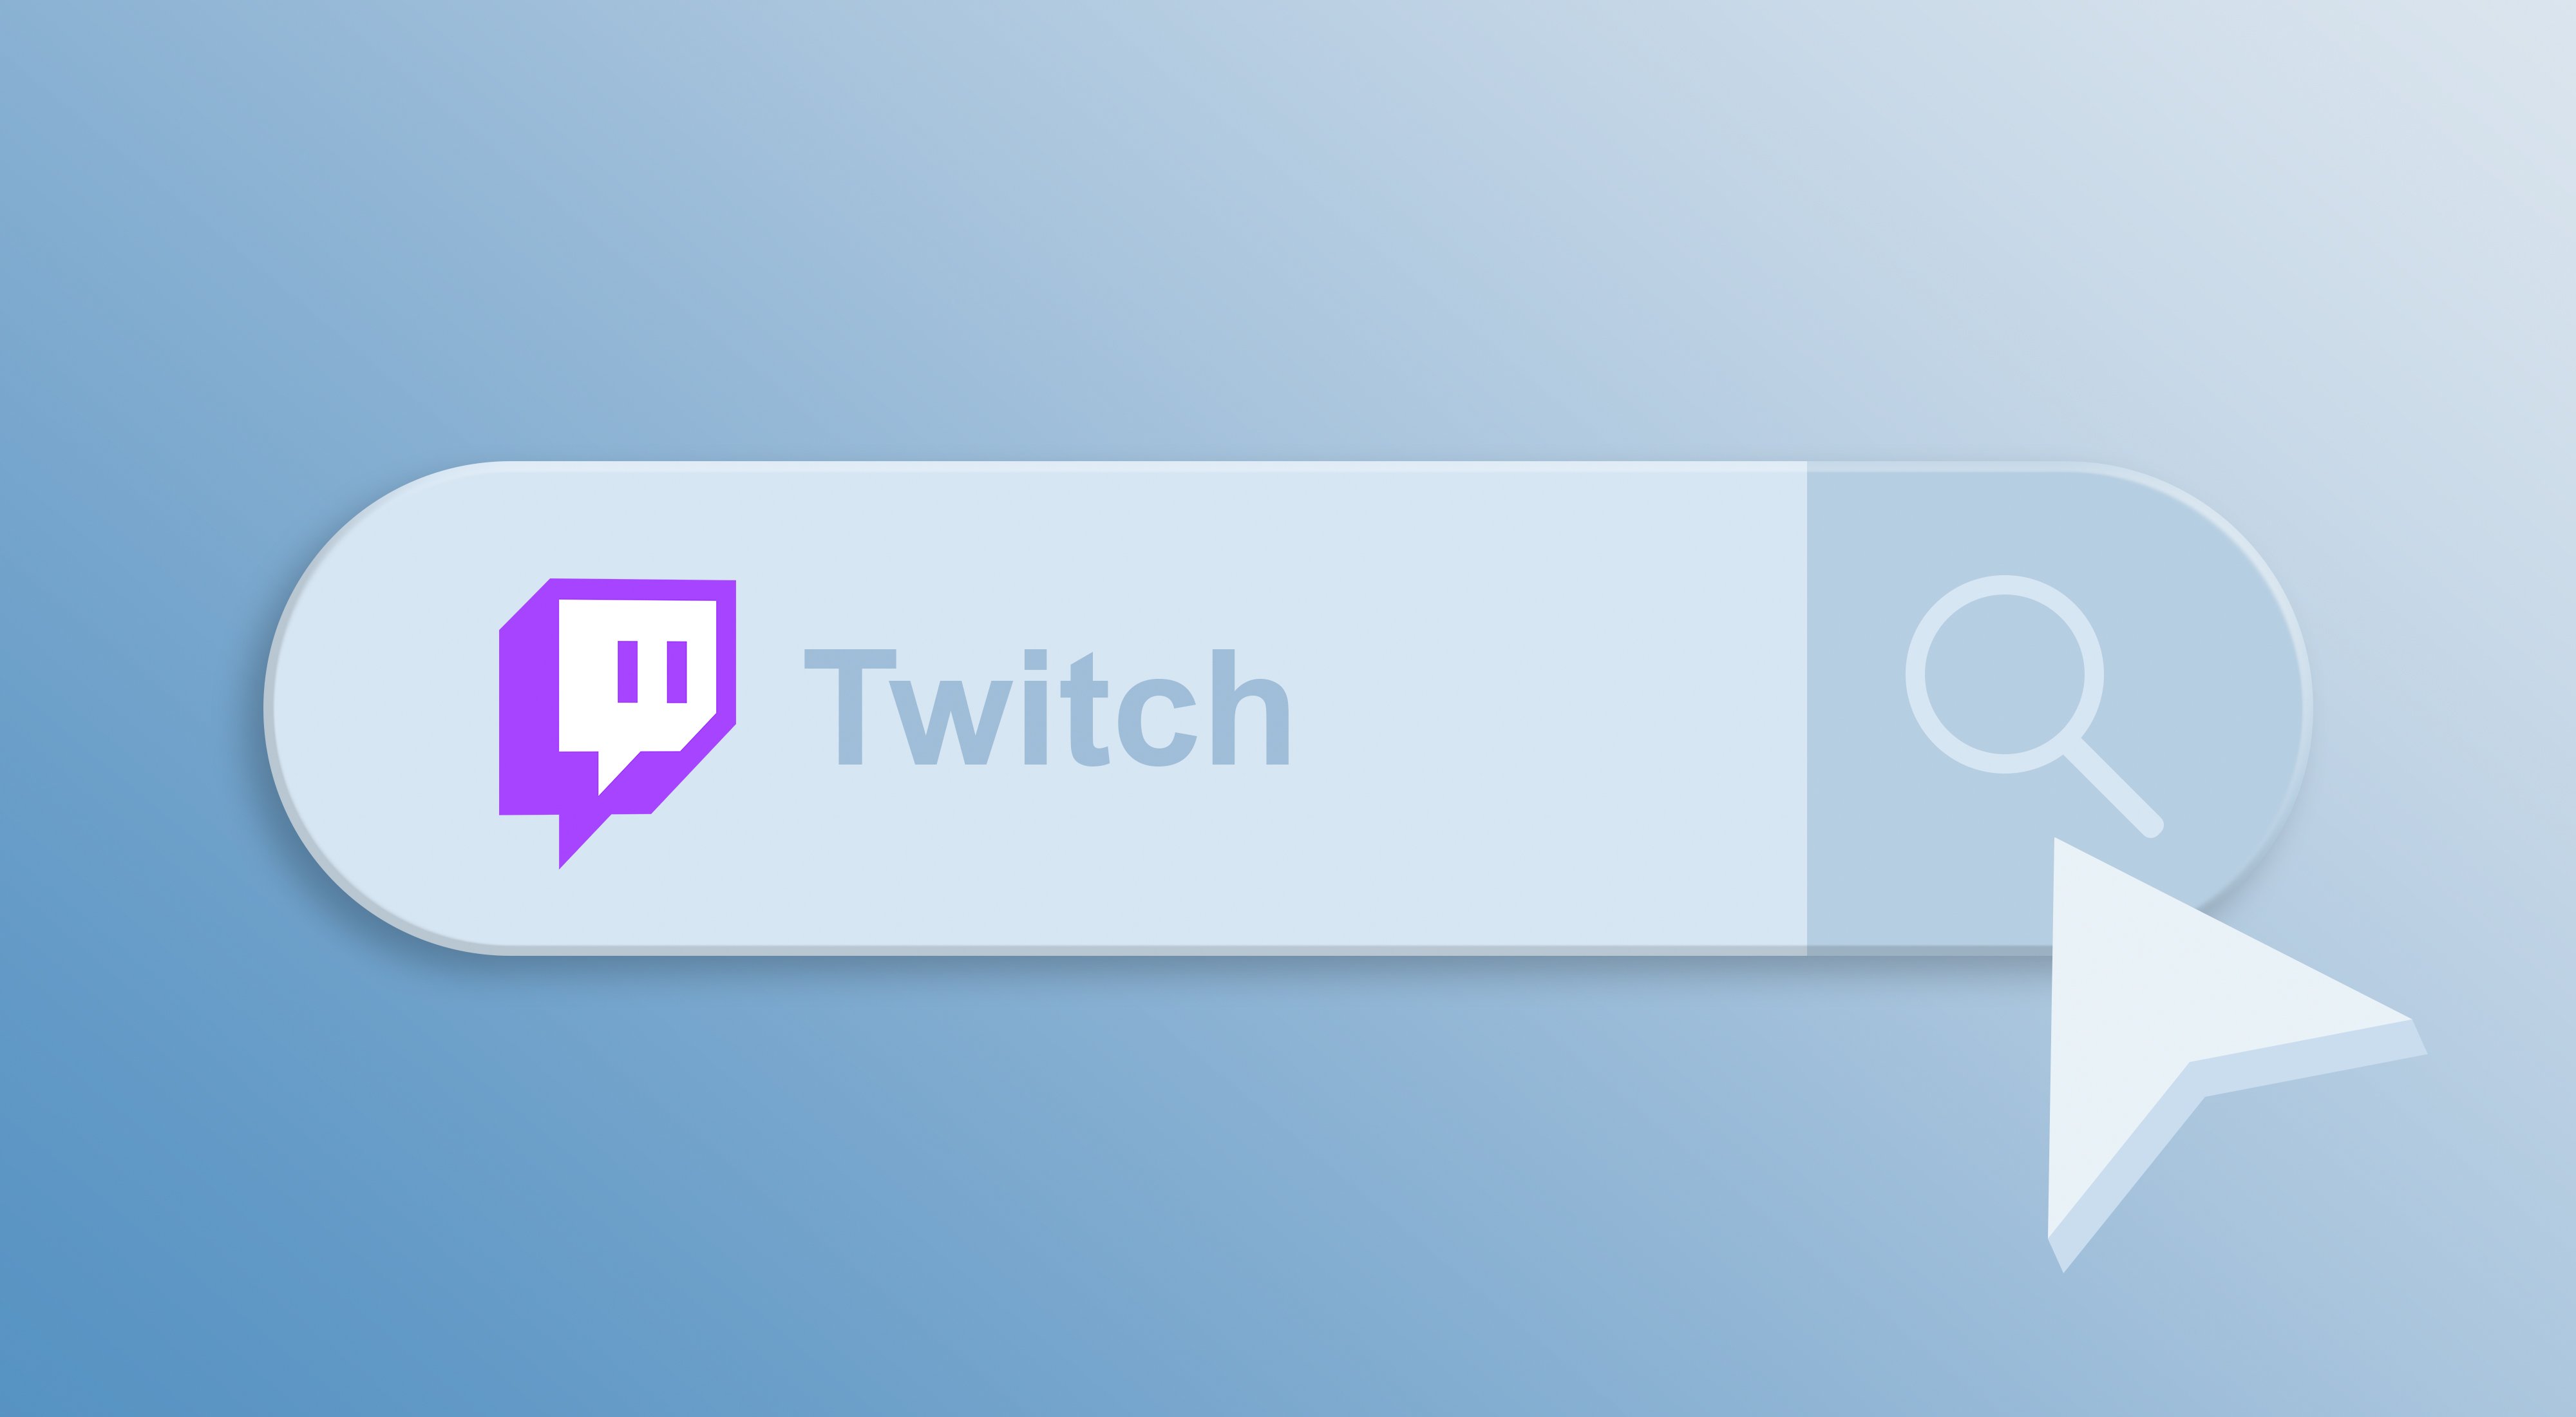 Logo de Twitch y una barra de búsqueda.